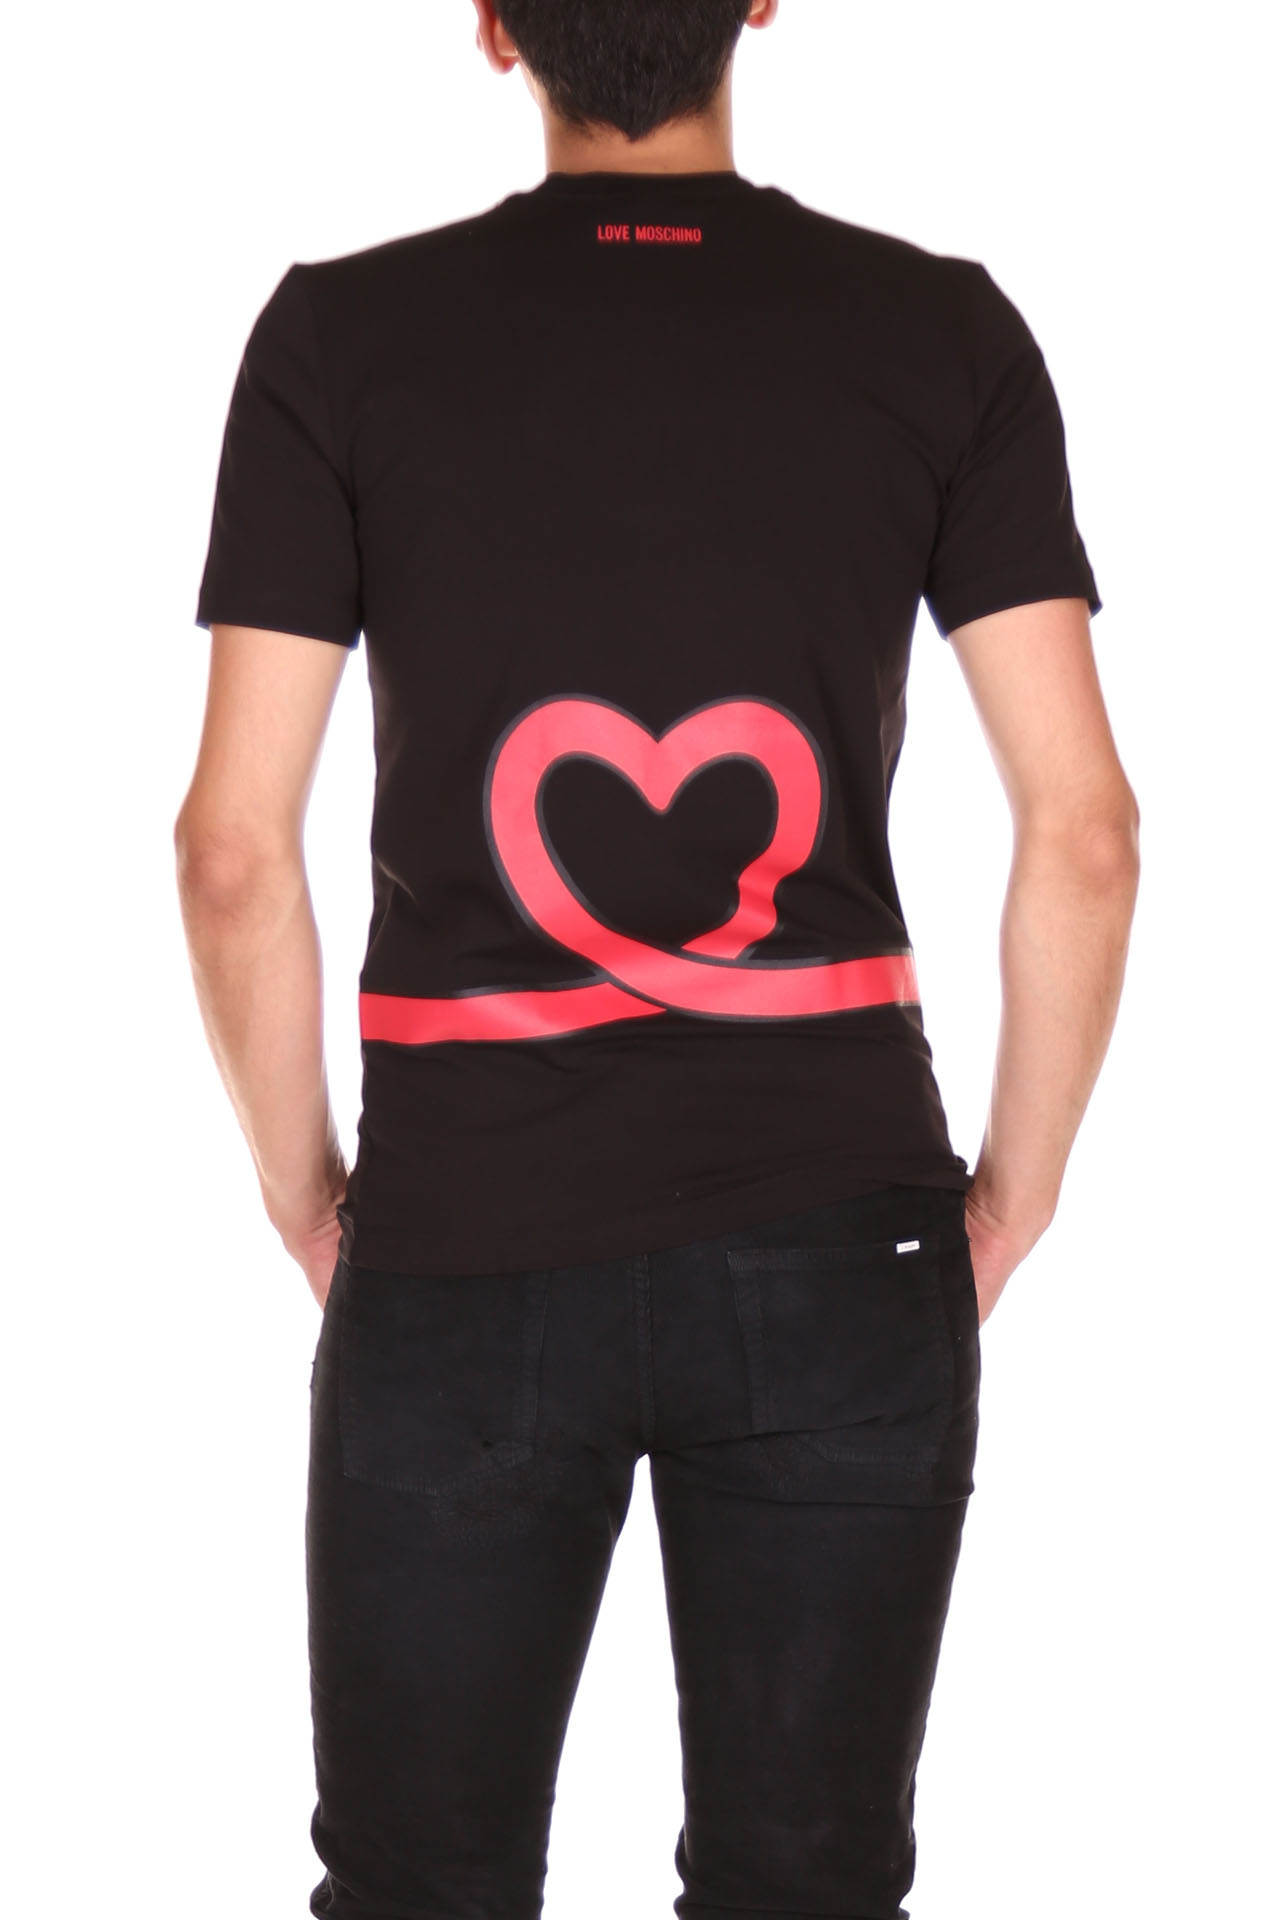 LOVE MOSCHINO, t-shirt